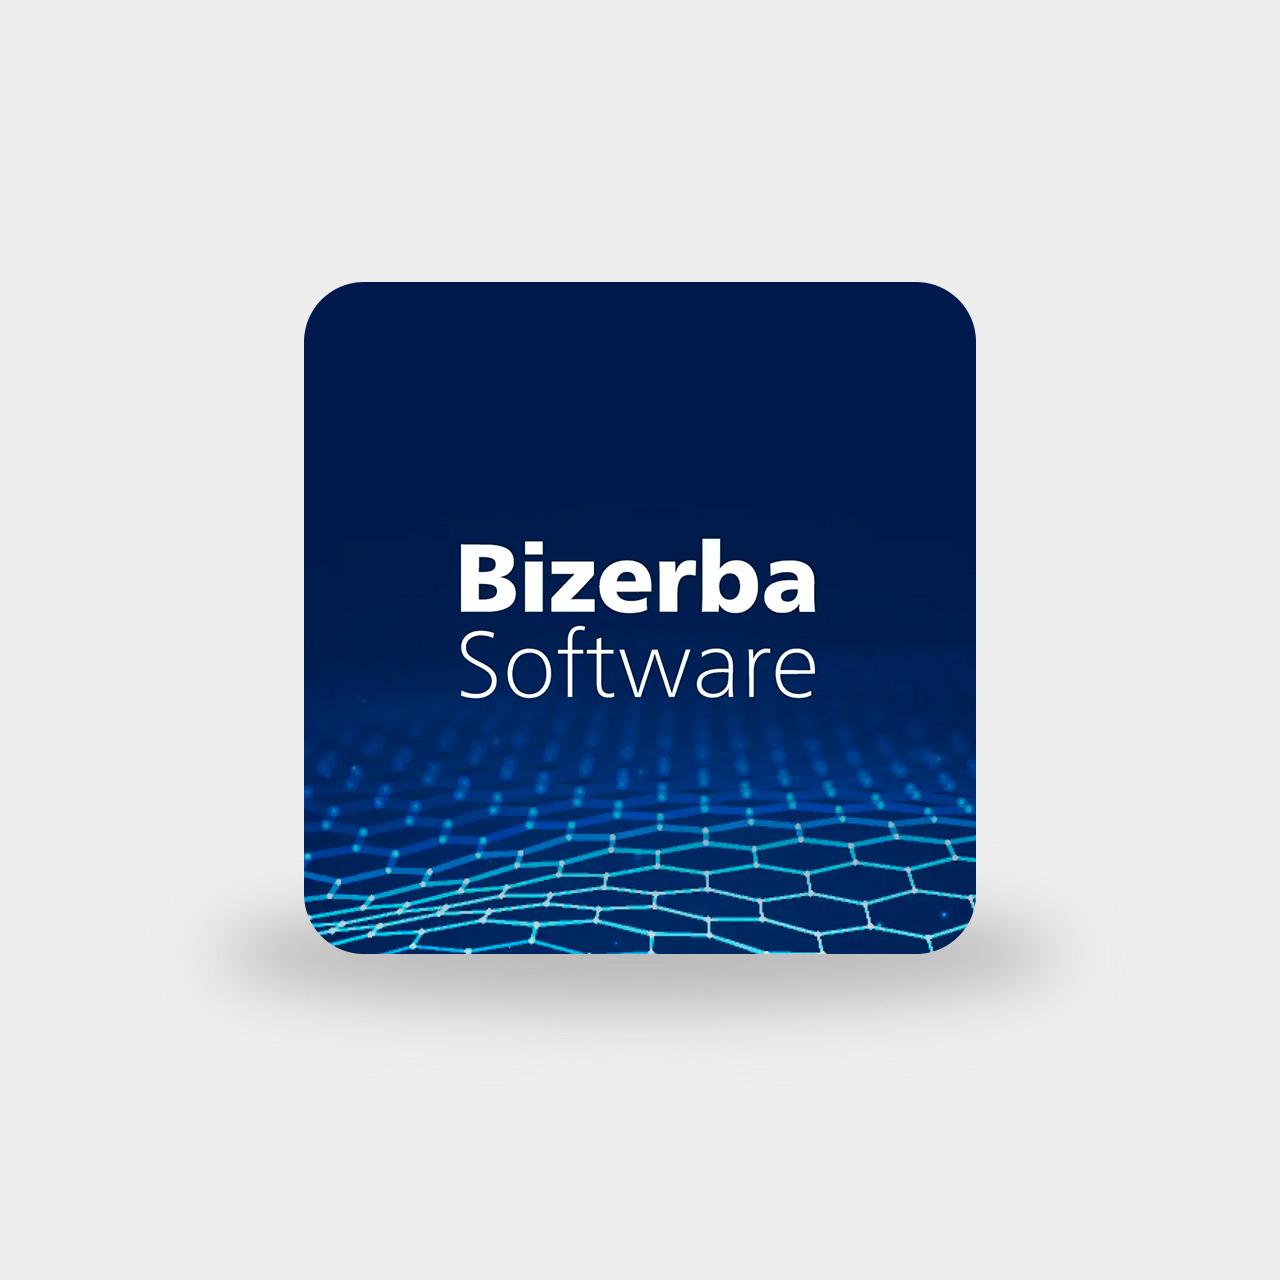 www.bizerba.com